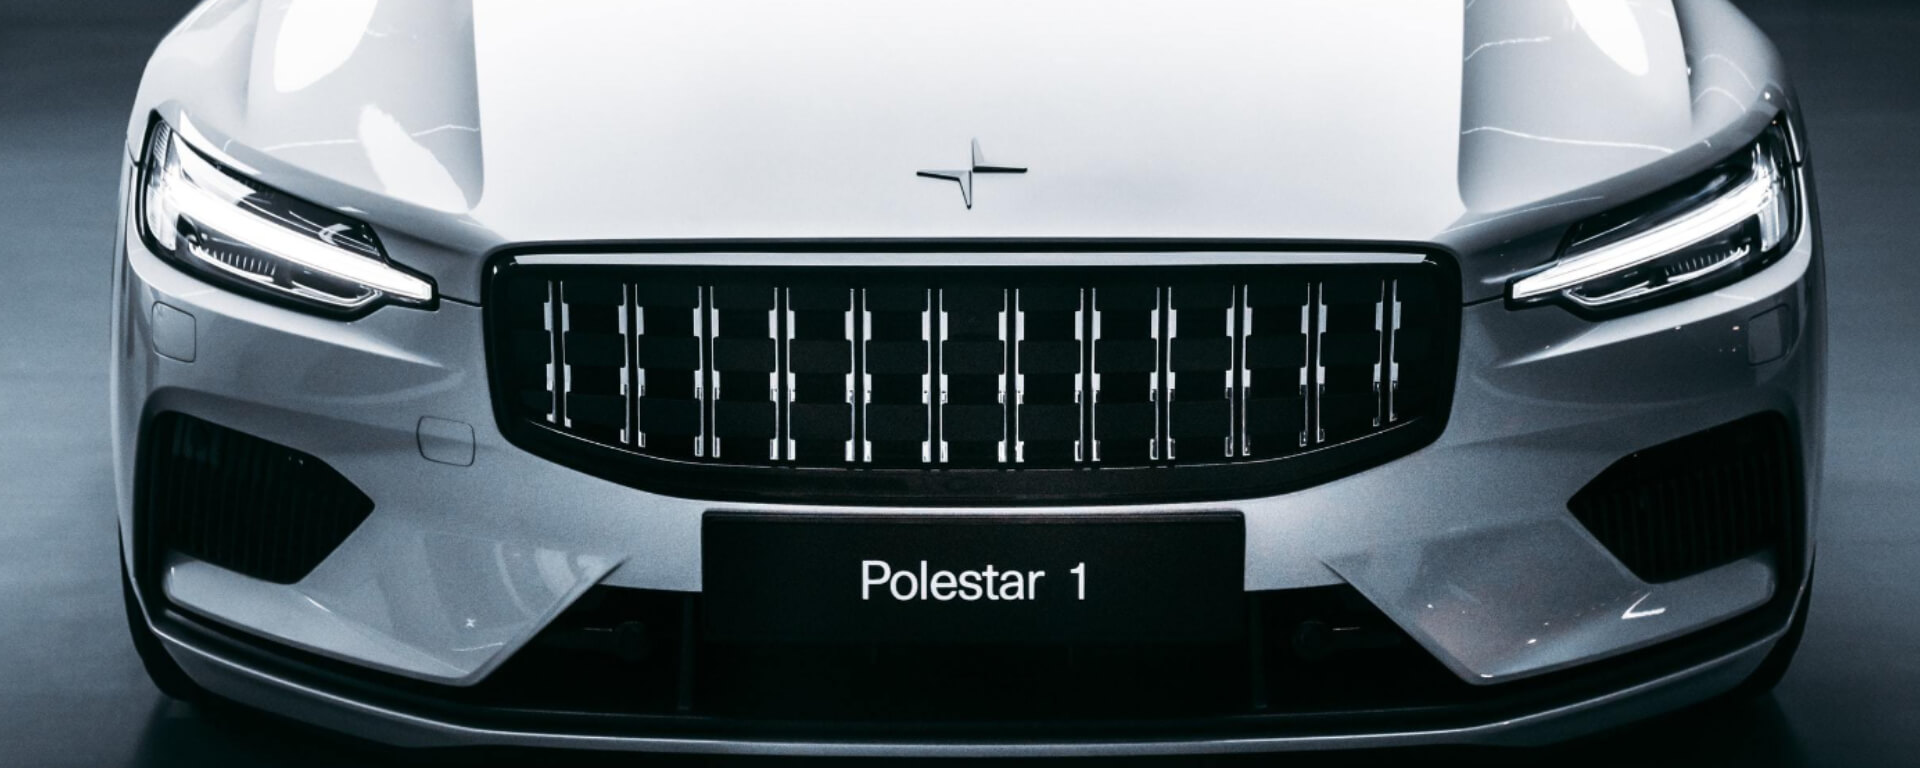 Polestar 1 Insurance Header Image